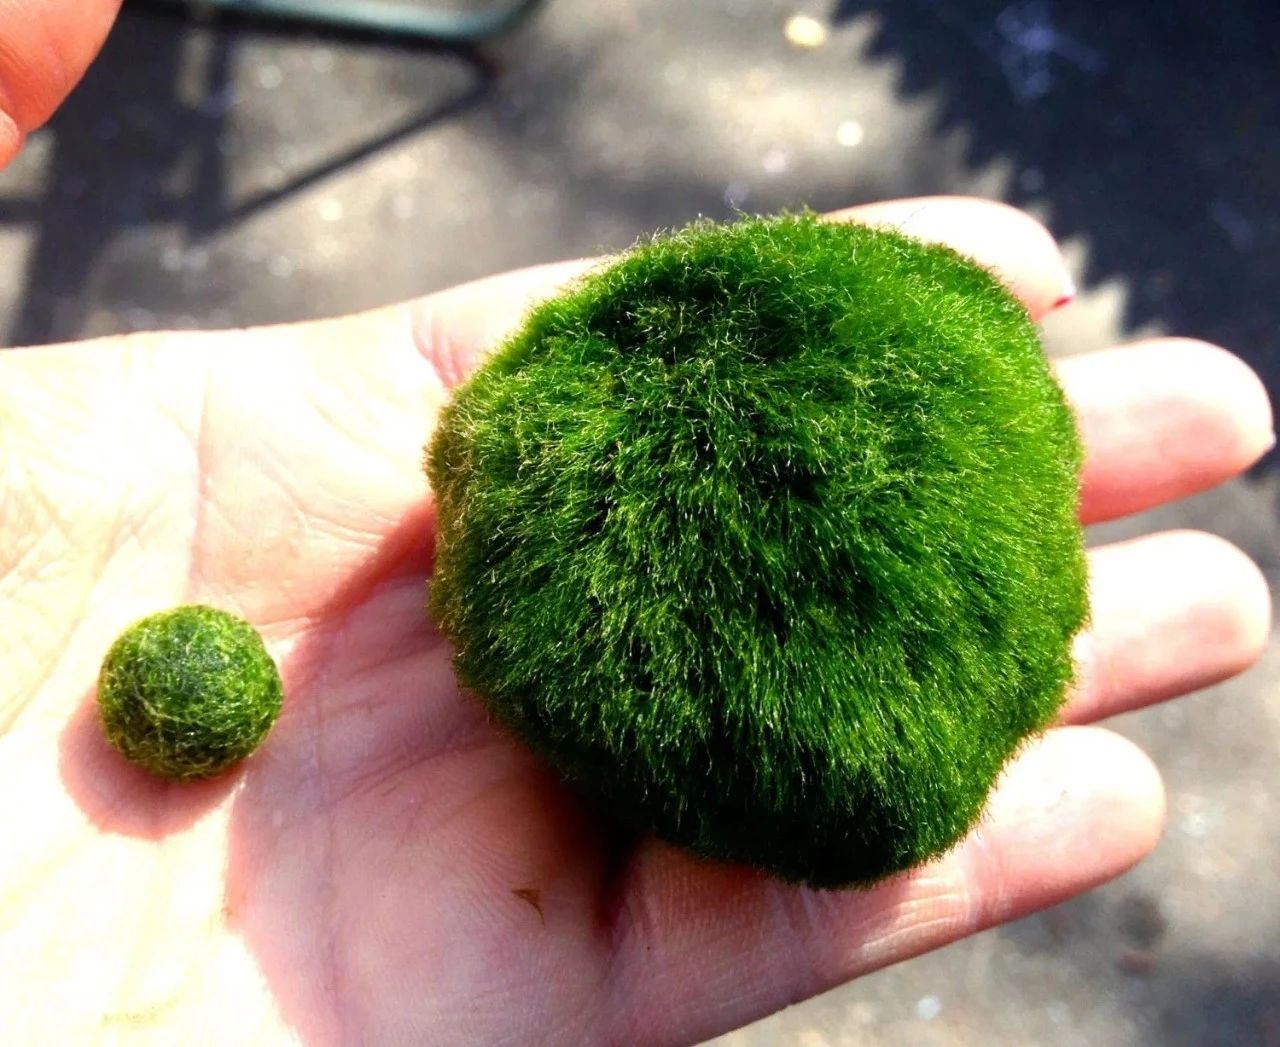 世界上最大的海藻球图片